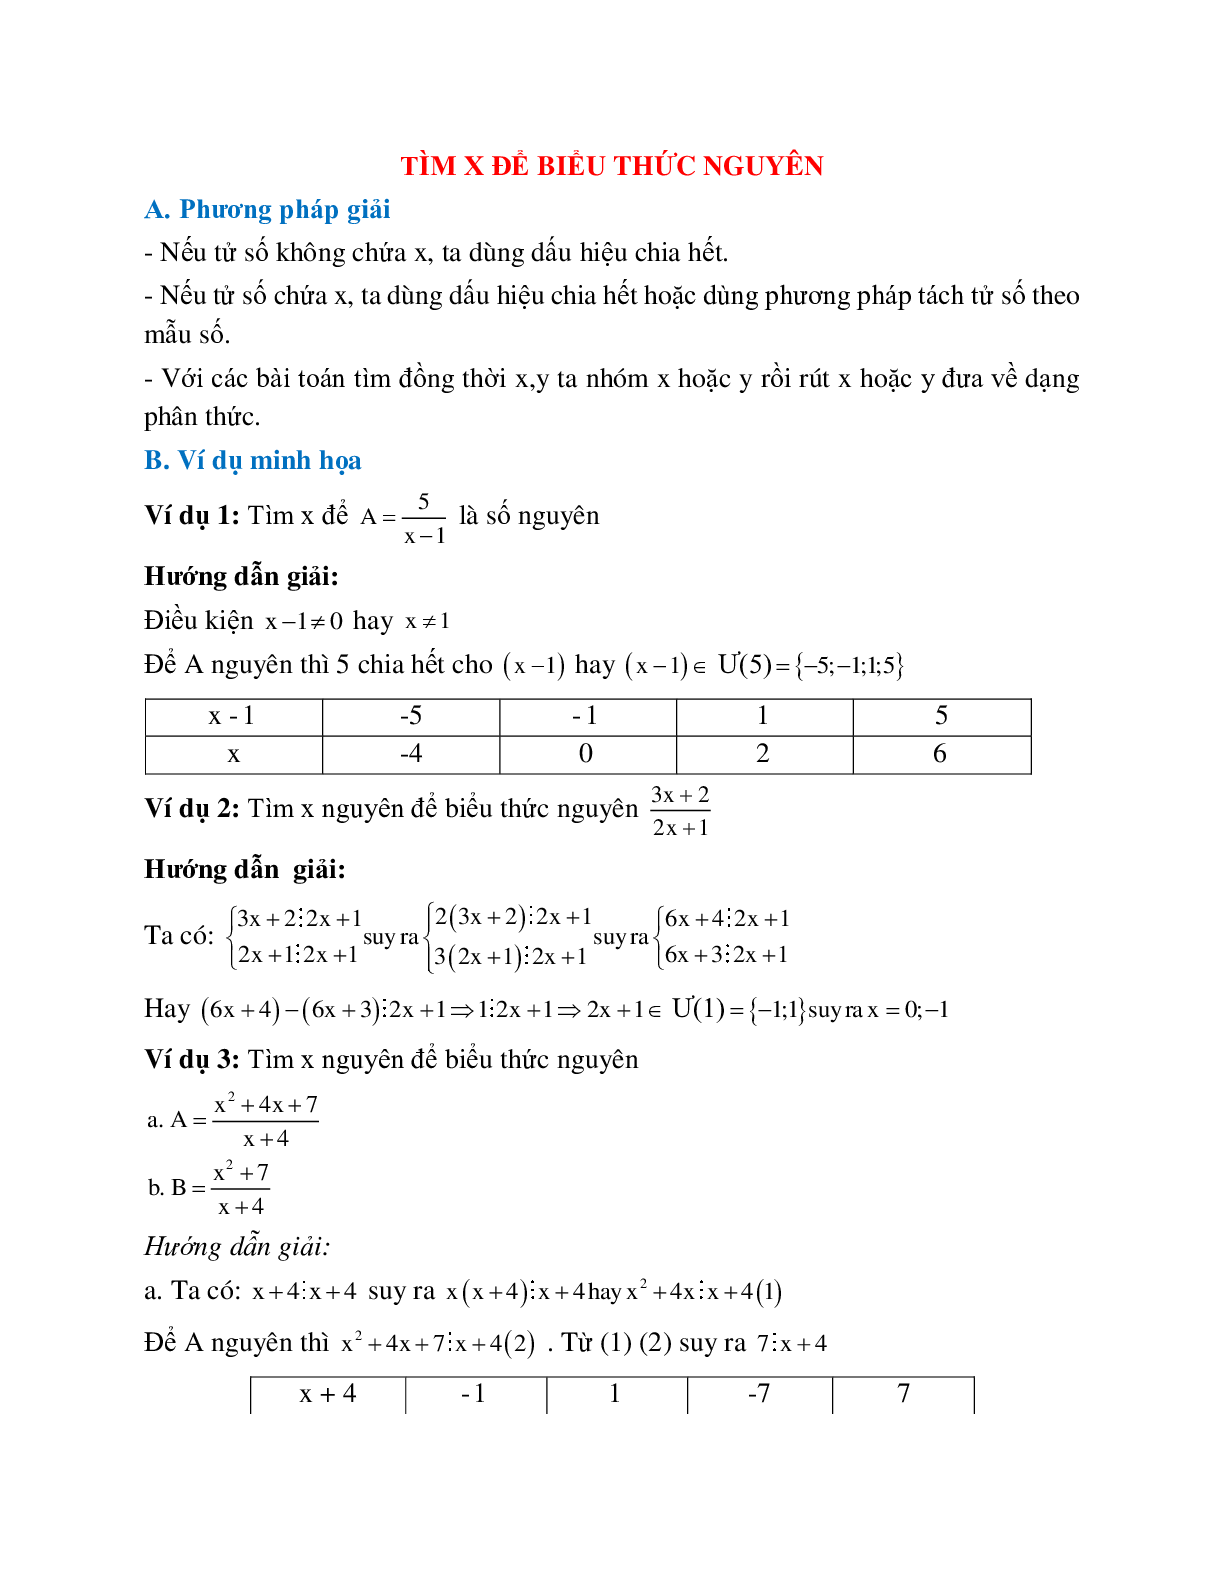 Cách giải Tìm x để biểu thức nguyên (trang 1)